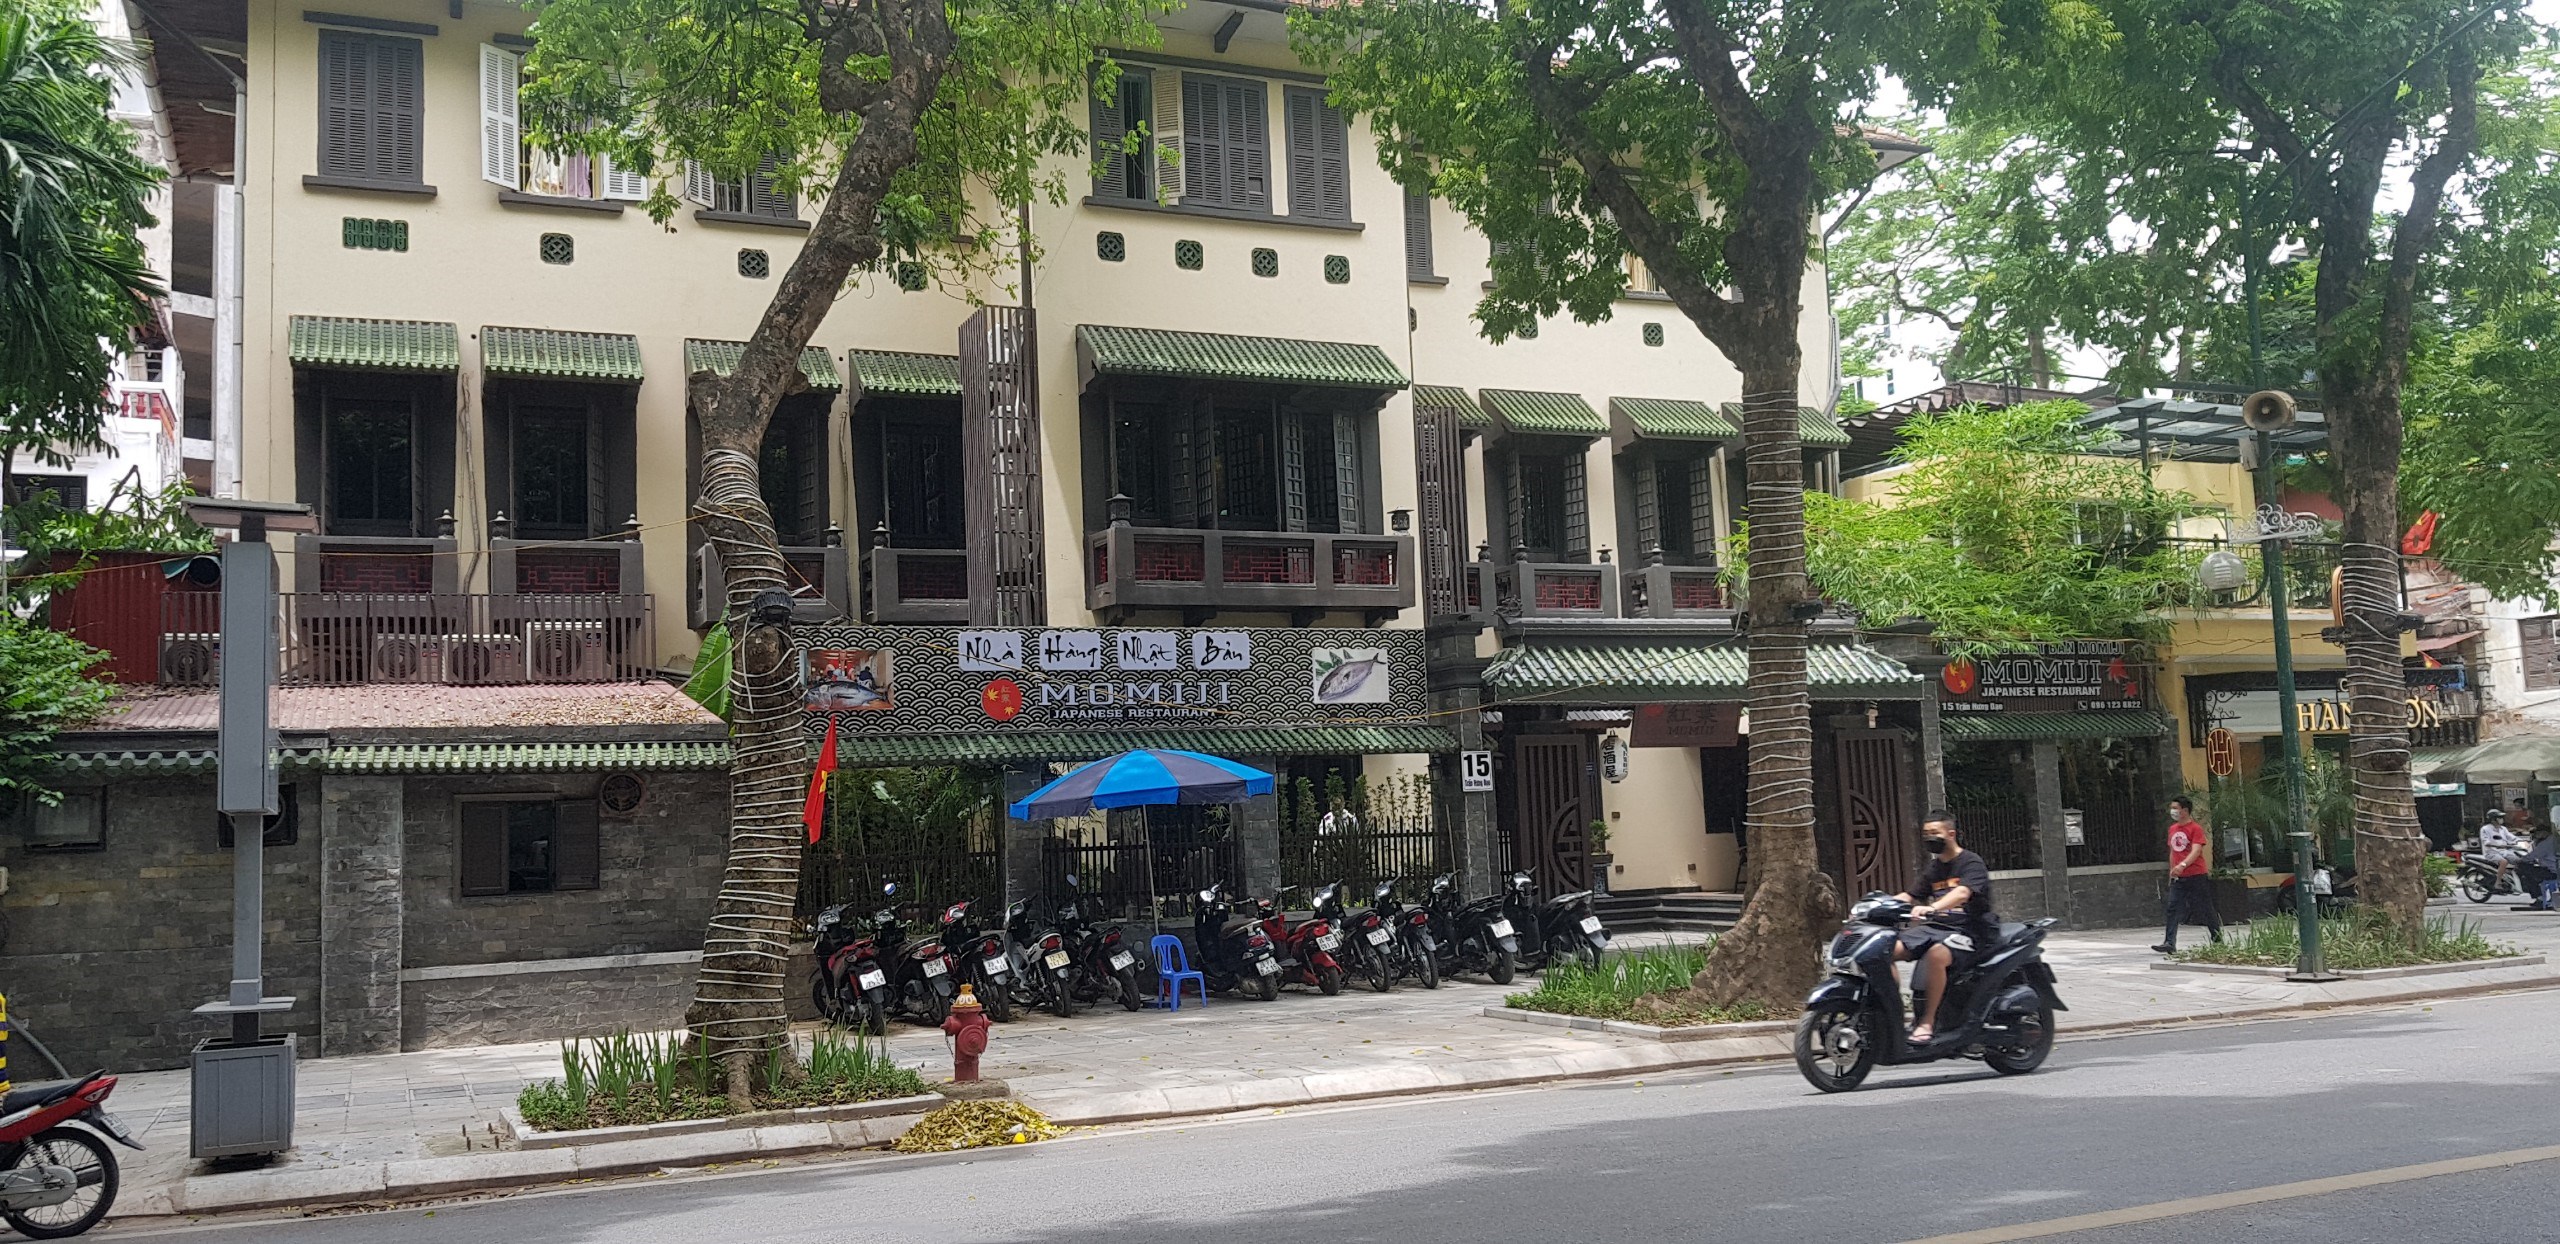 Bán nhà 800m2 mặt phố Hai Bà Trưng Phan Chu Trinh Hoàn Kiếm Hà Nội.